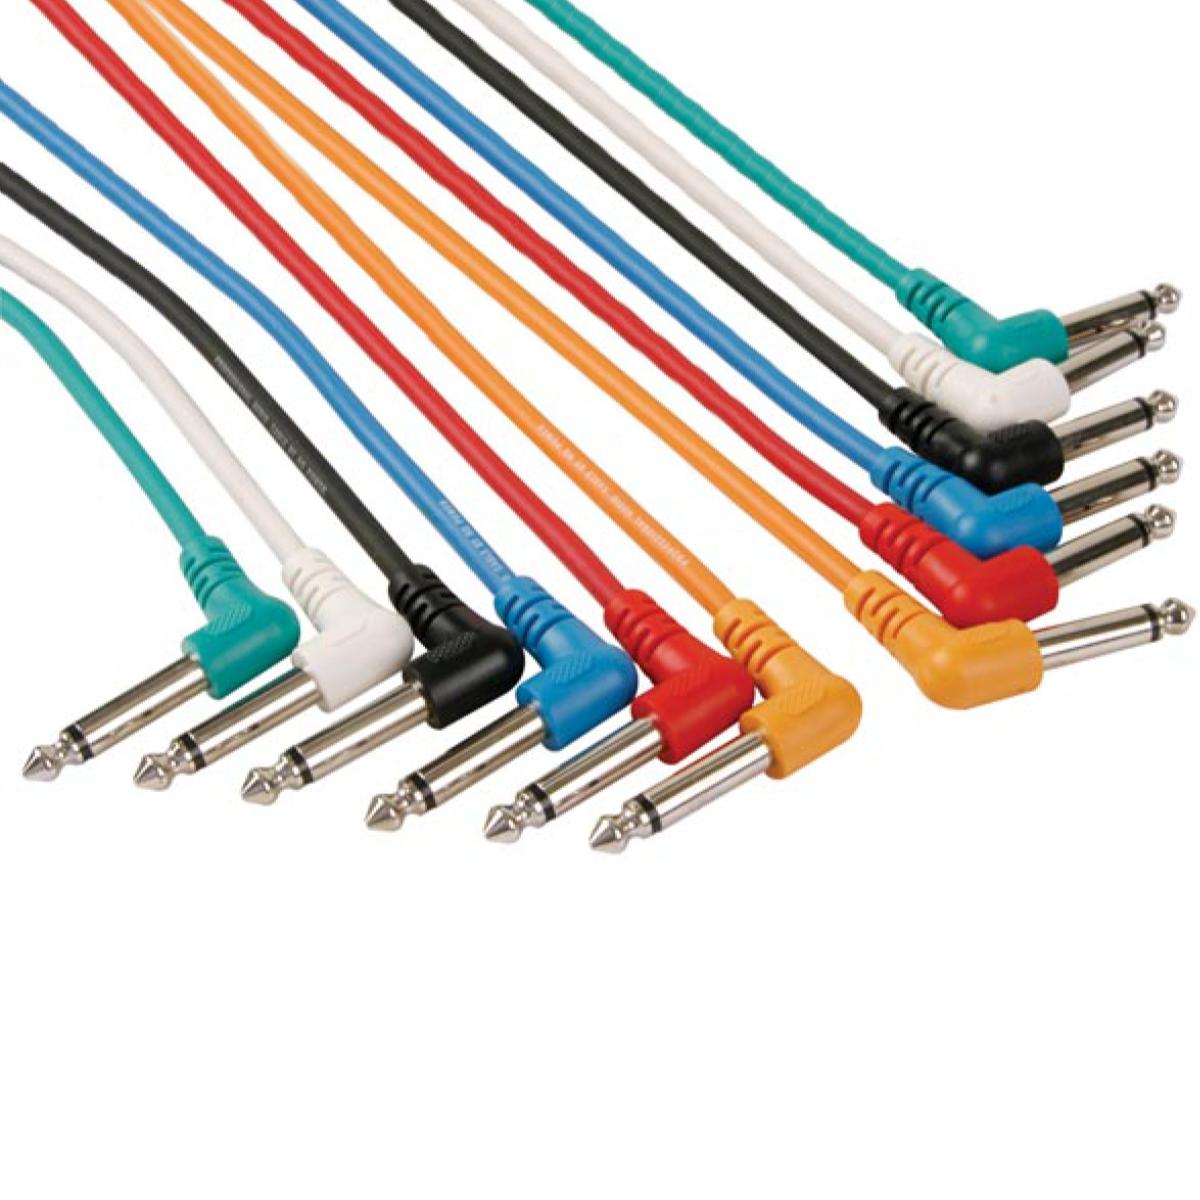 Cable Jack 6.35 / Double Jack - 3 mètres - Achat / Vente de câbles